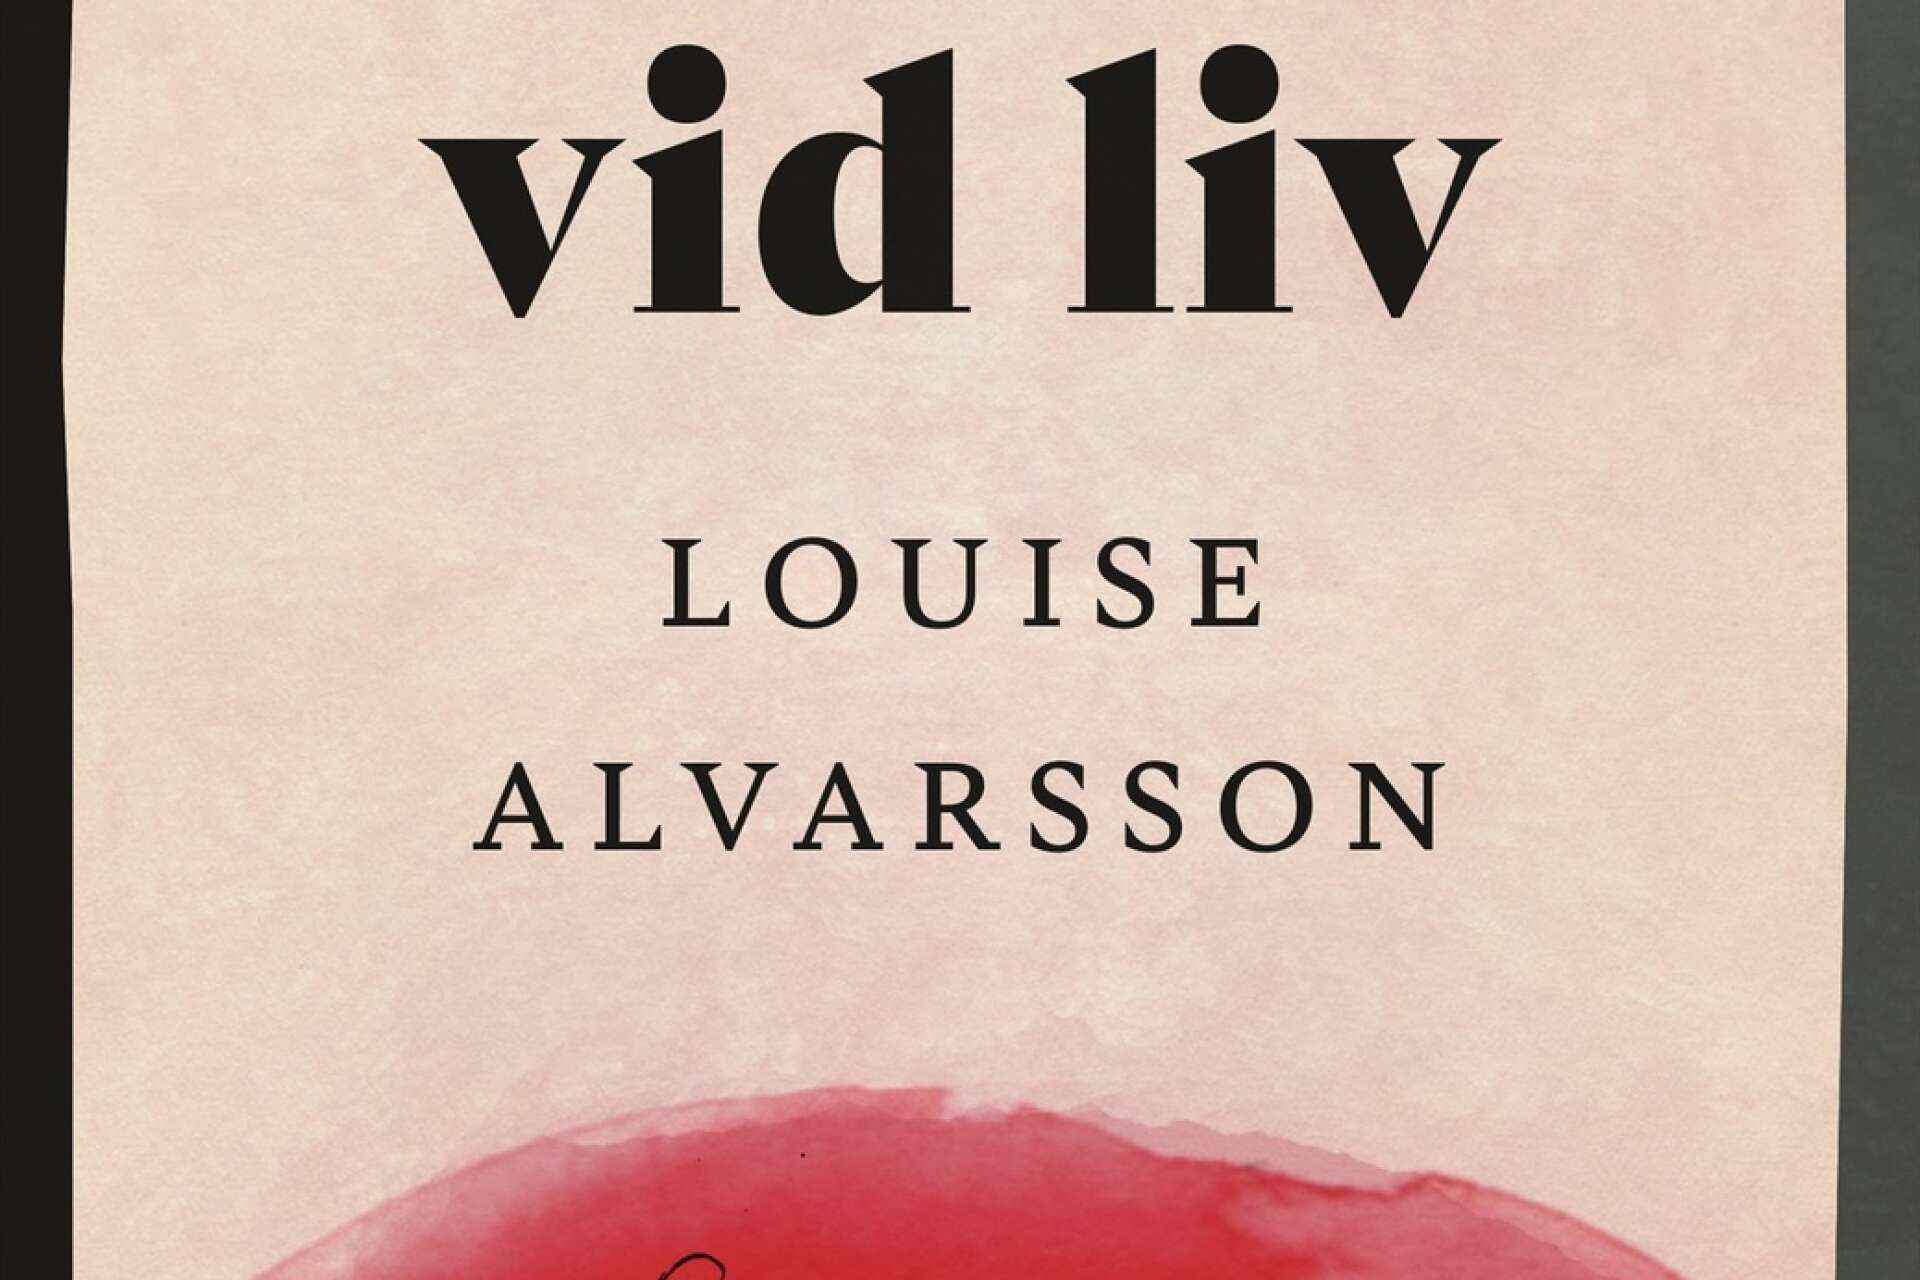 Vid liv blir Louise Alvarssons romandebut. Boken släpps på Norstedt den 11 januari.